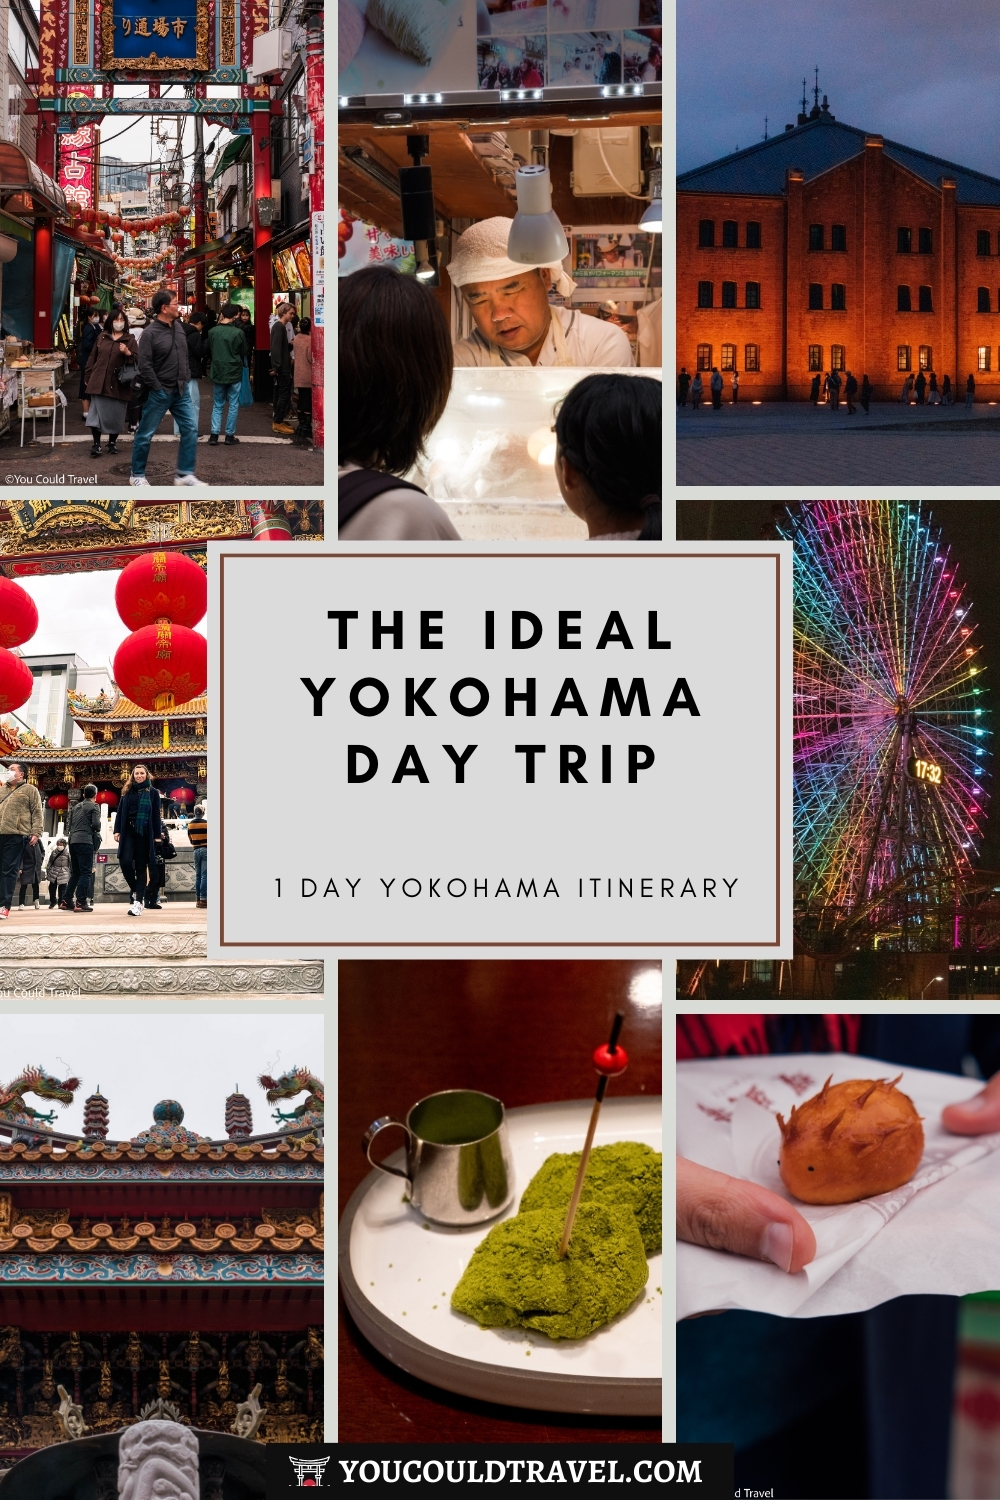 Yokohama Day Trip - 1 Day Yokohama itinerary